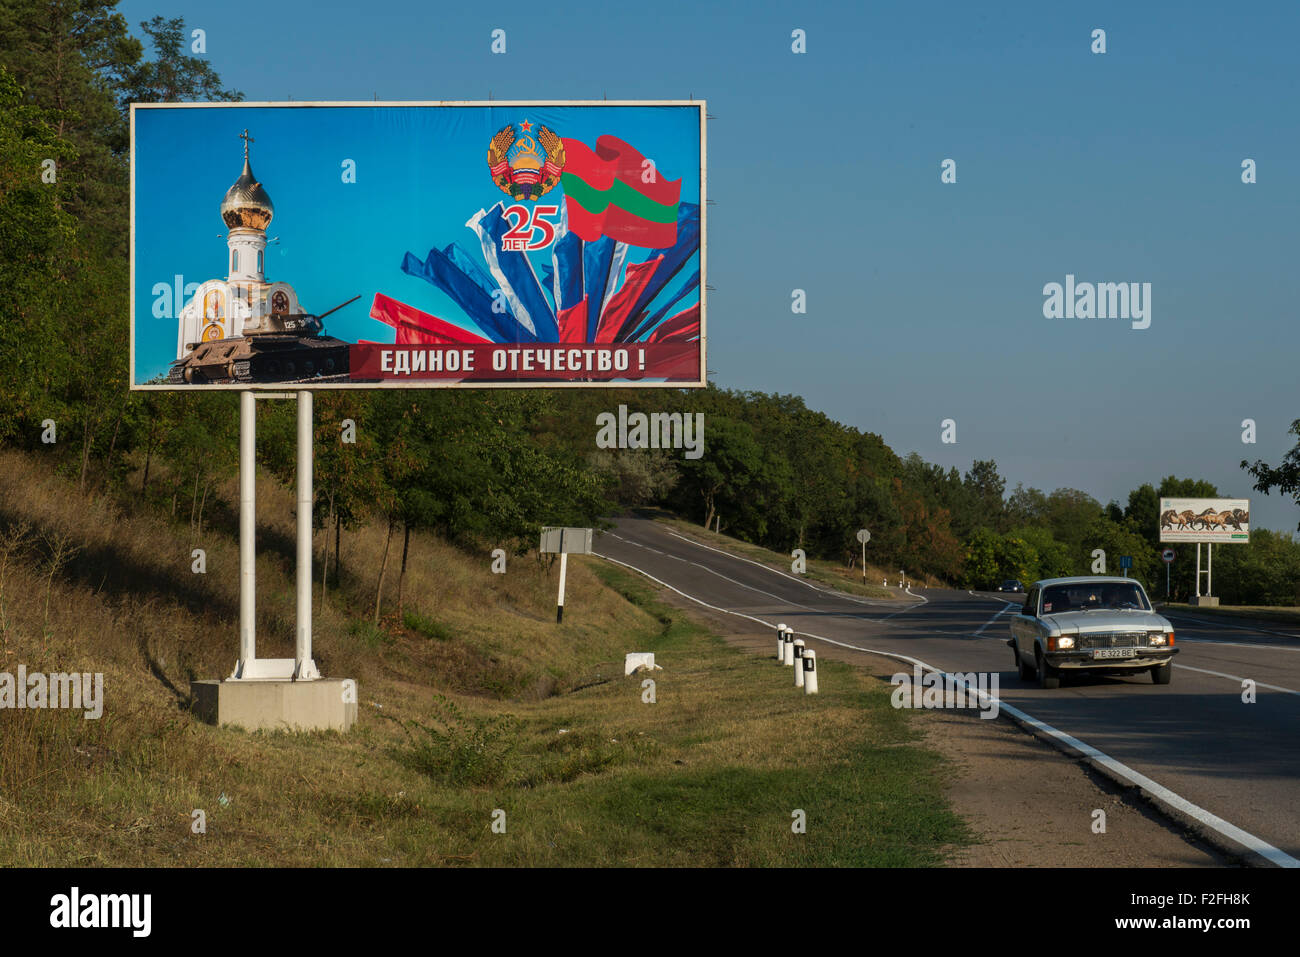 Am Straßenrand Poster - 25. Jahrestag der Schewtschenko moldauischen Republik PMR, Transnistrien, sowjetische UdSSR Moldau Stockfoto